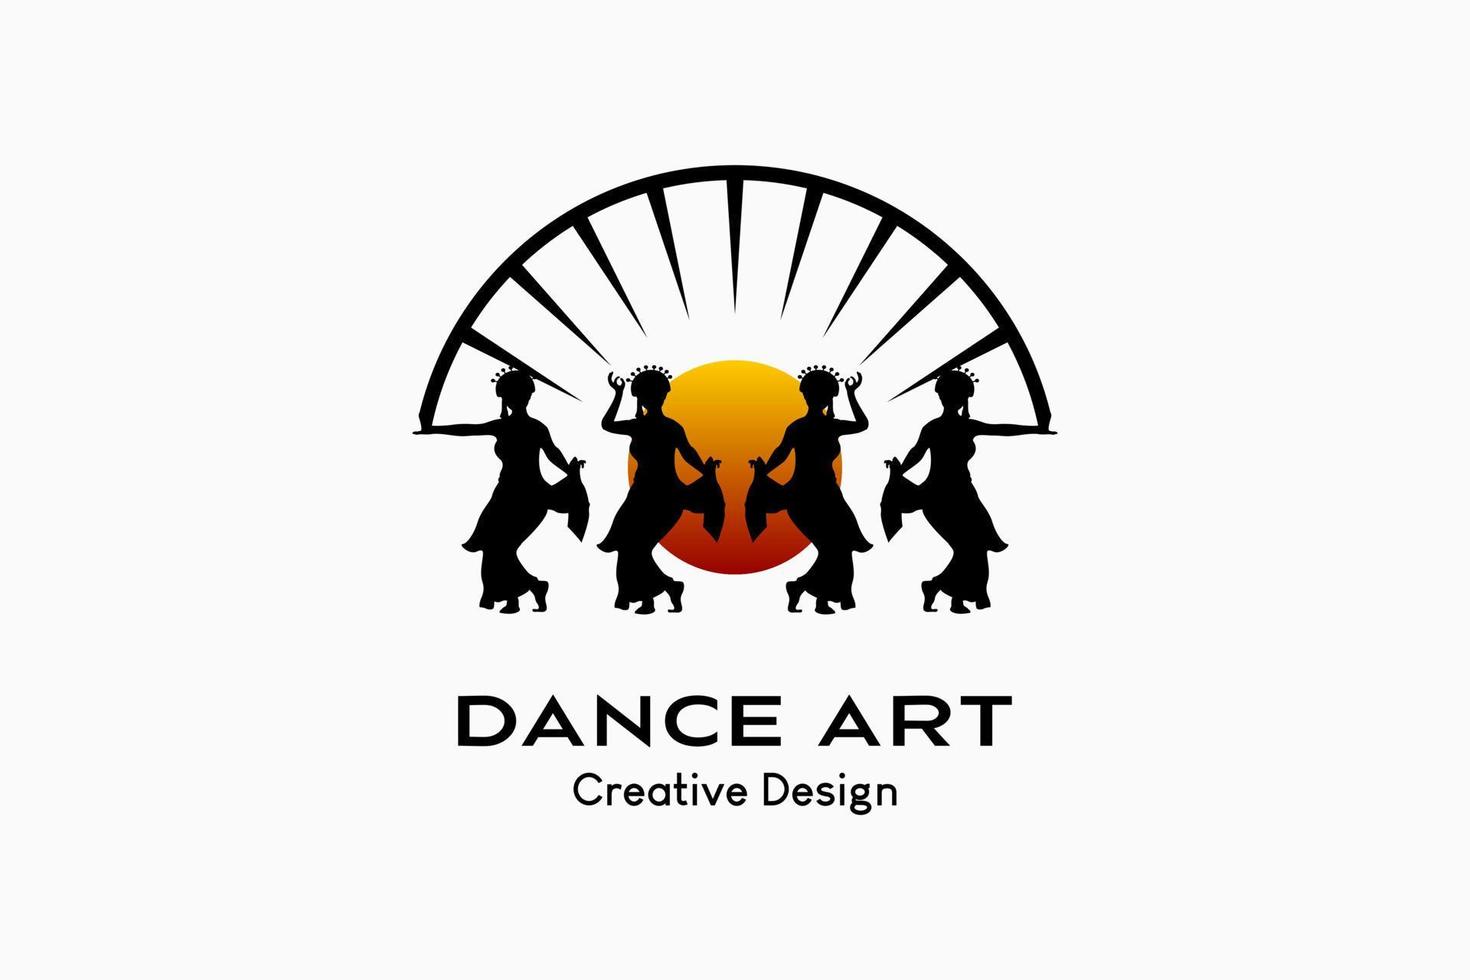 diseño del logo del grupo de baile en concepto creativo, silueta de mujer combinada con icono de sol o luna. prima vectorial vector